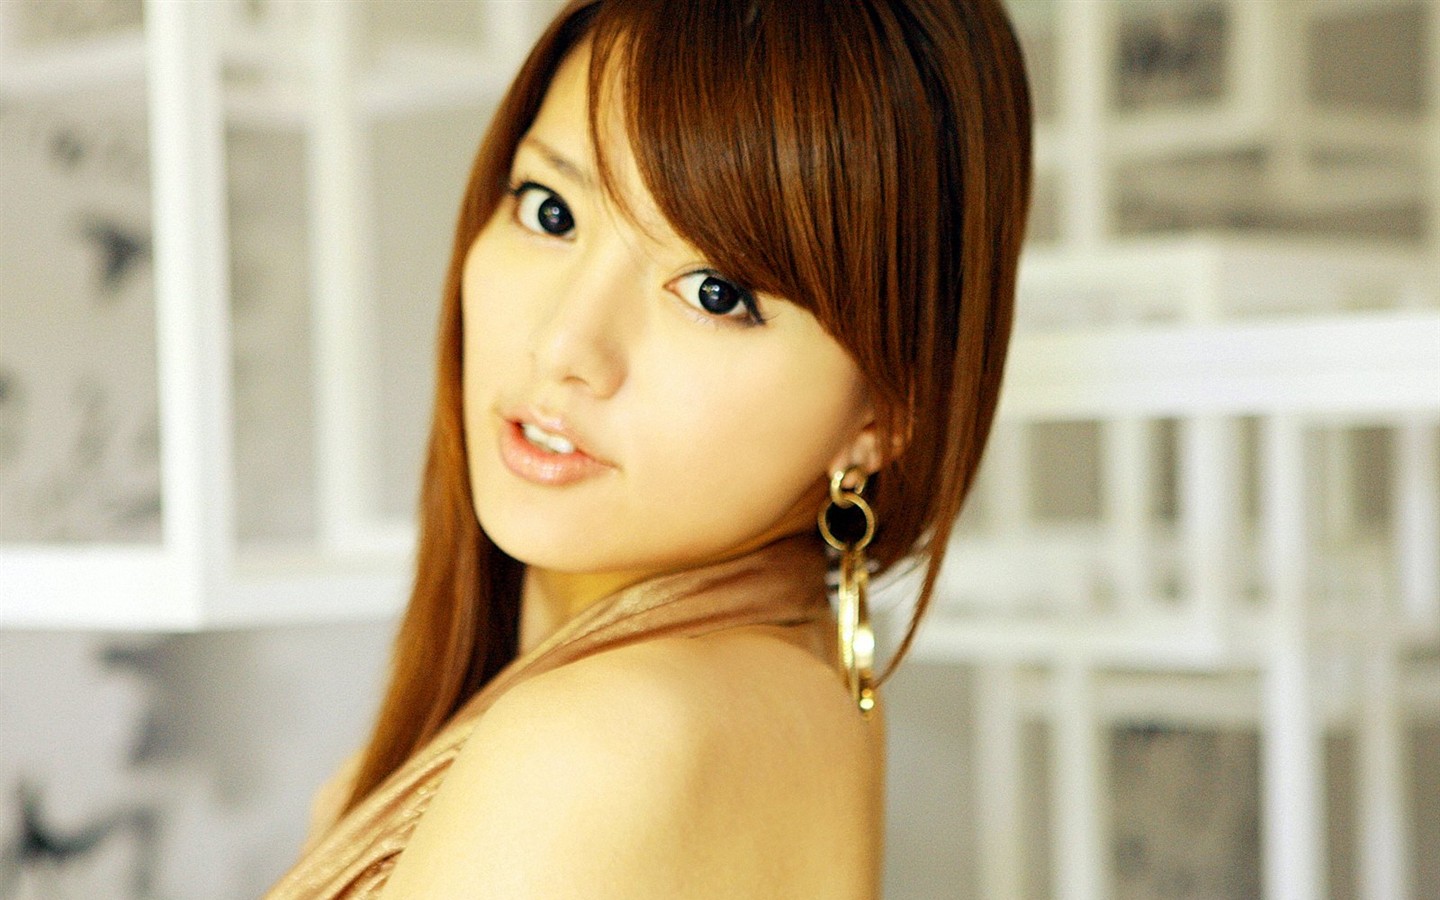 Alan Japan sexy actress photo #1 - 1440x900